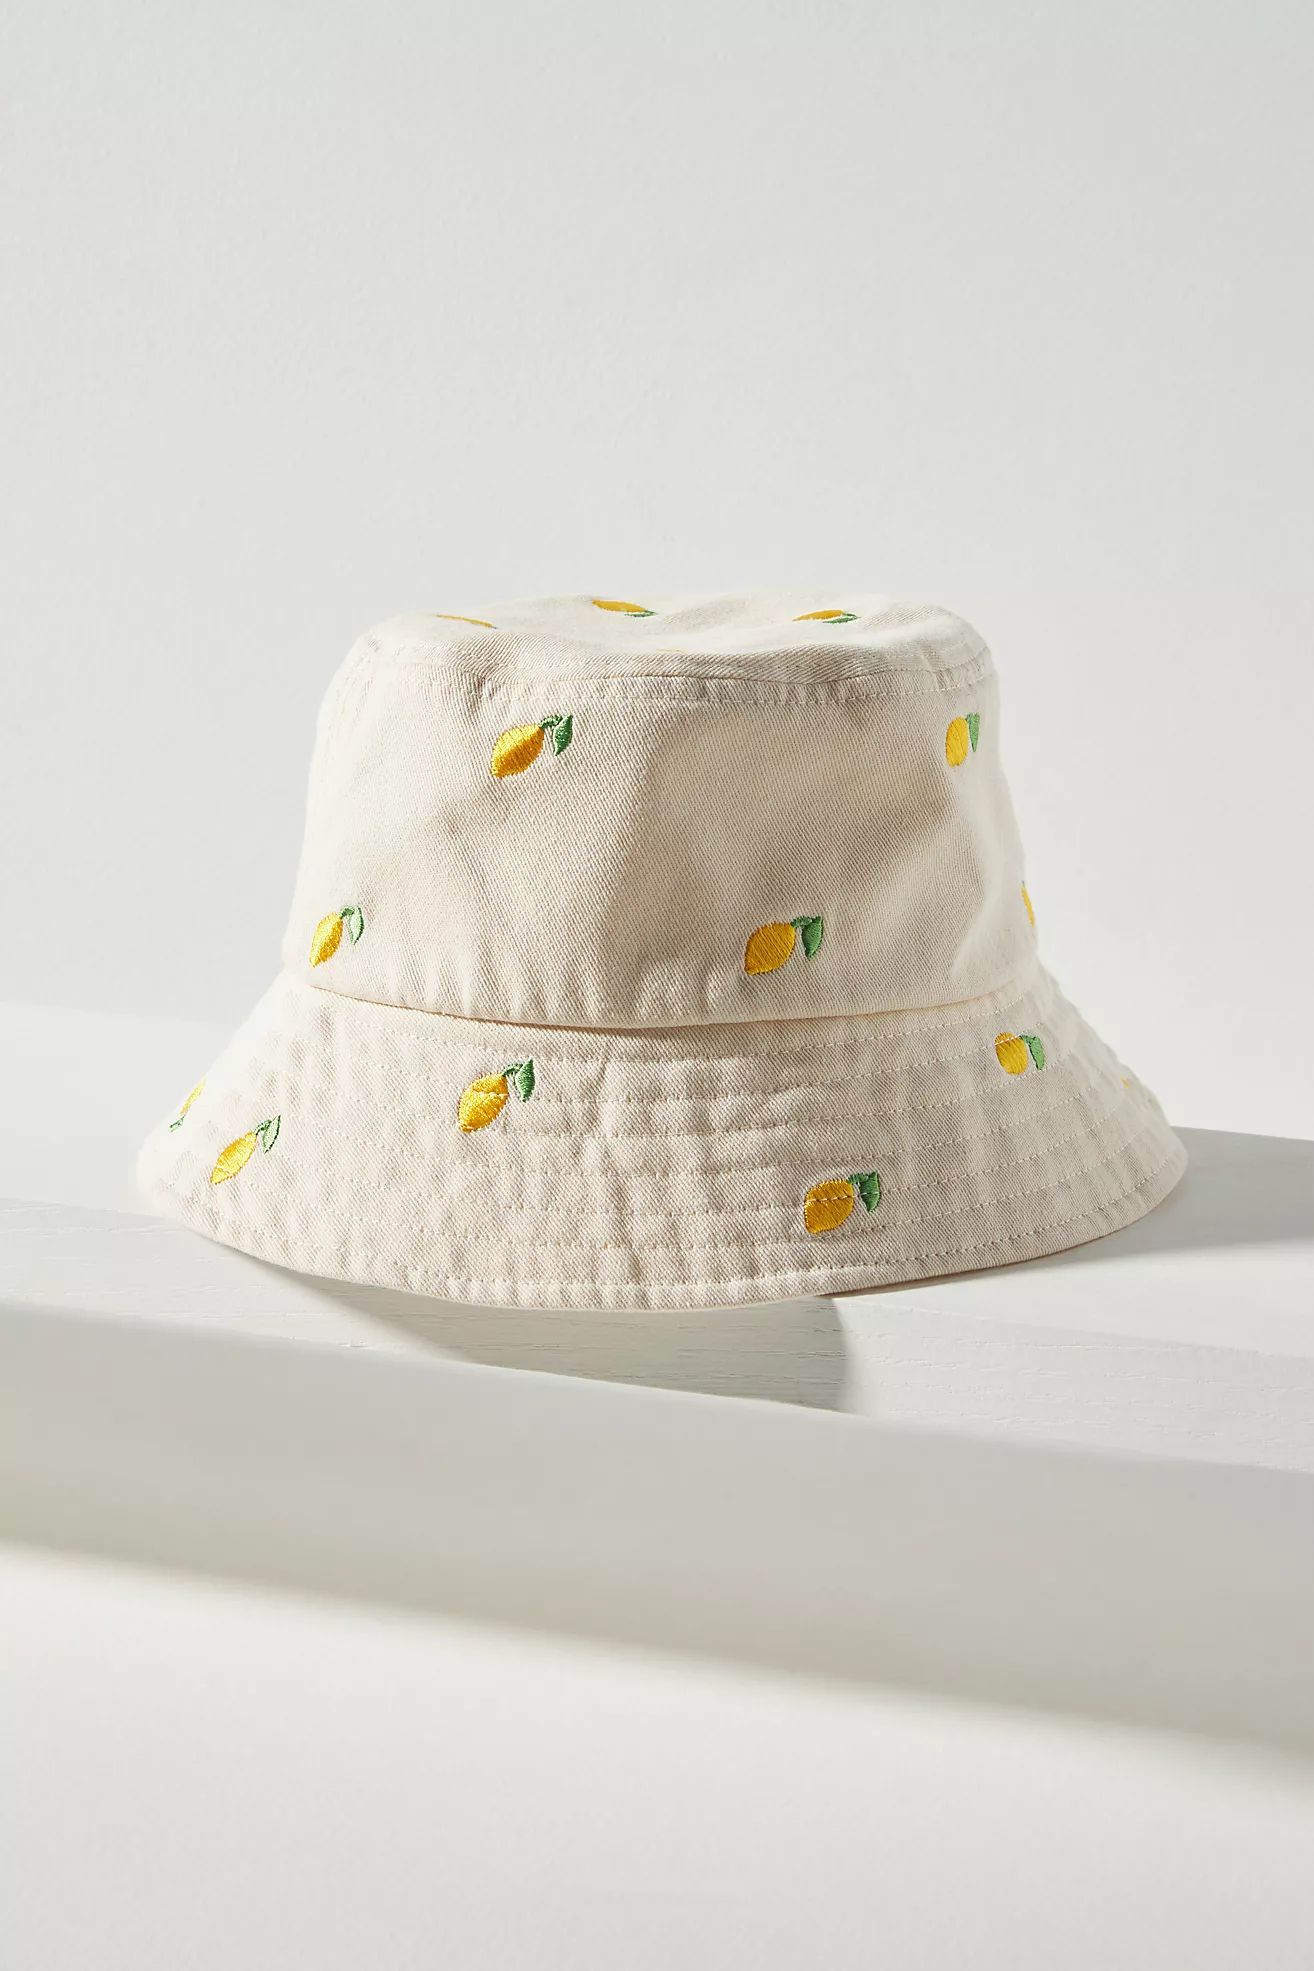 Becksöndergaard Limone Bucket Hat | Anthropologie (US)